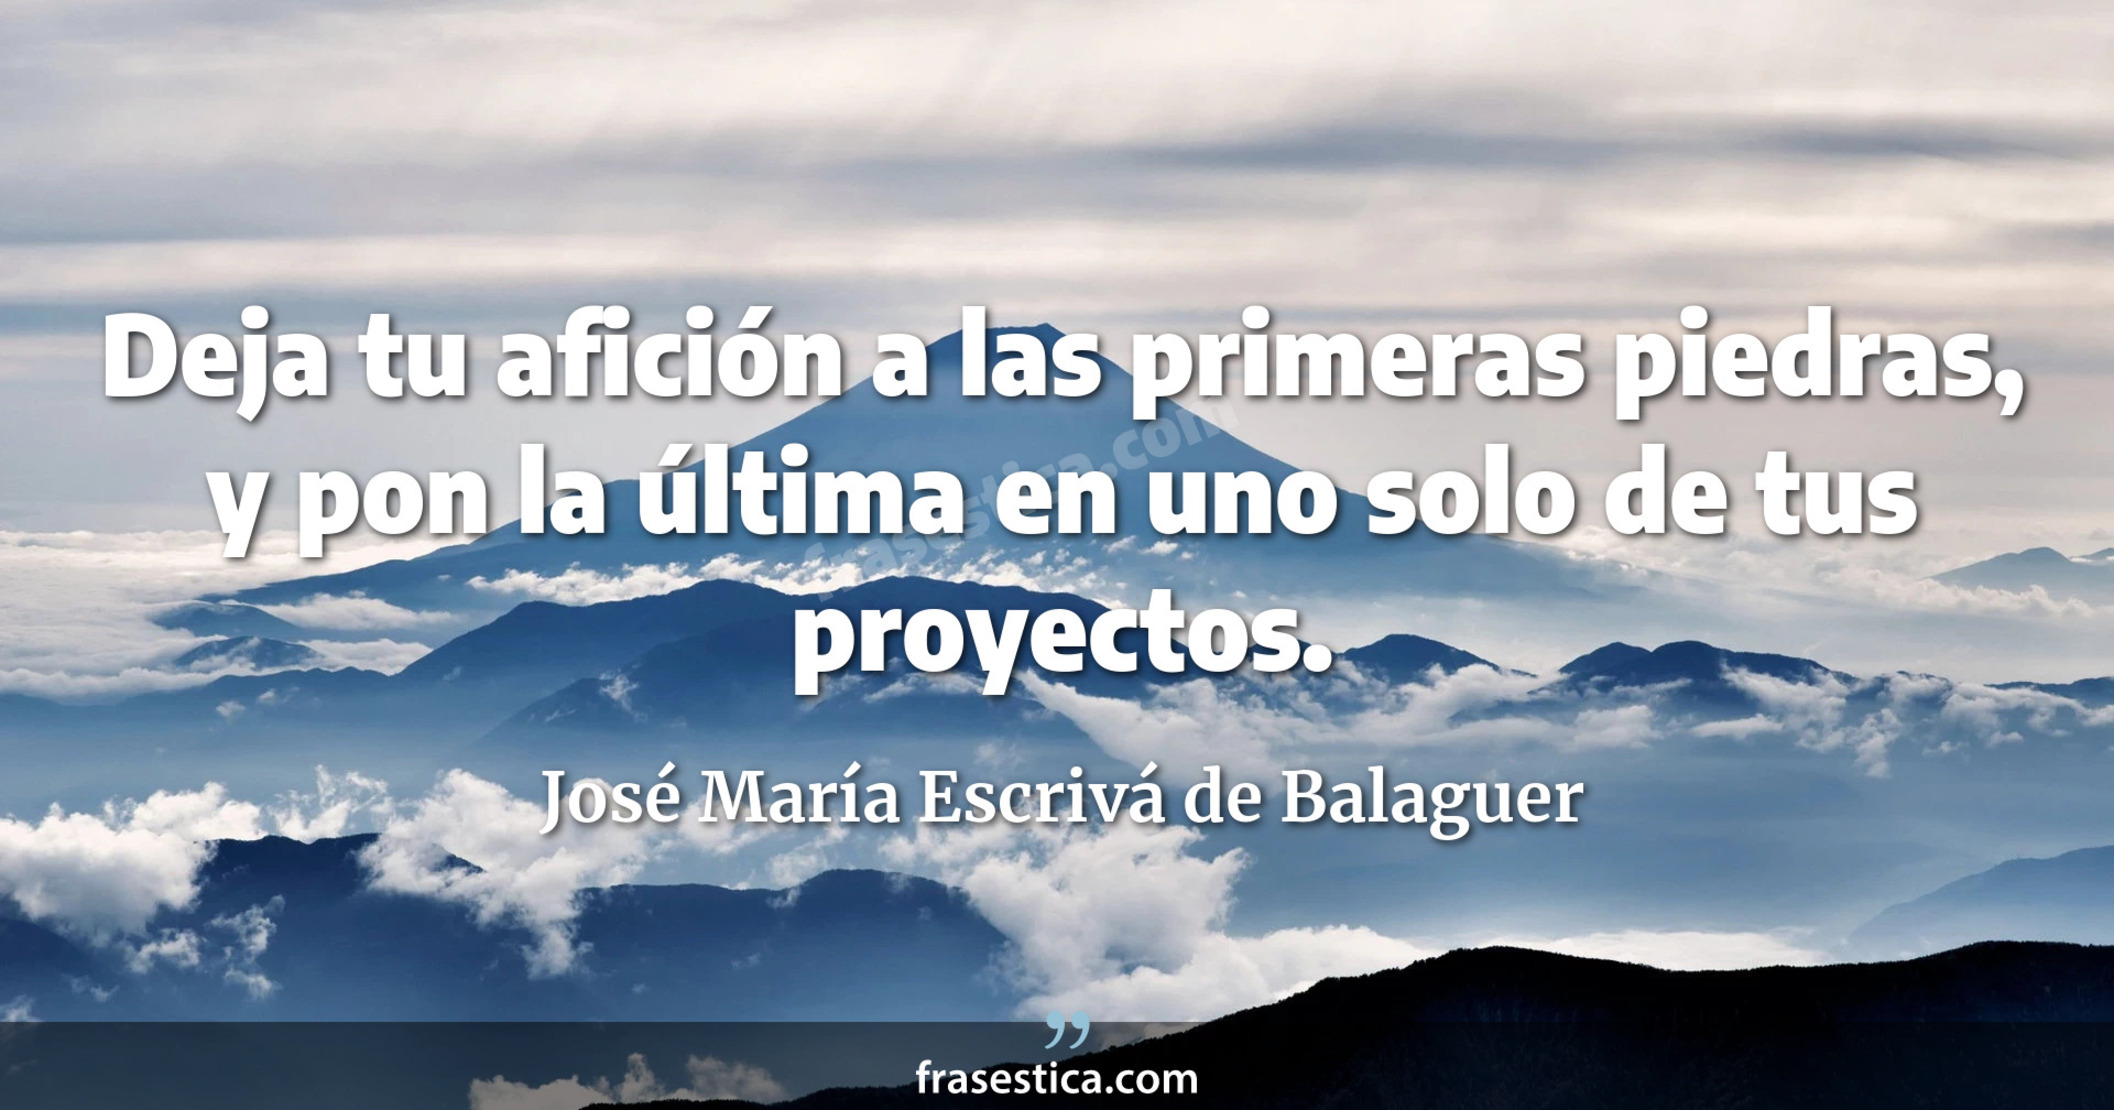 Deja tu afición a las primeras piedras, y pon la última en uno solo de tus proyectos. - José María Escrivá de Balaguer